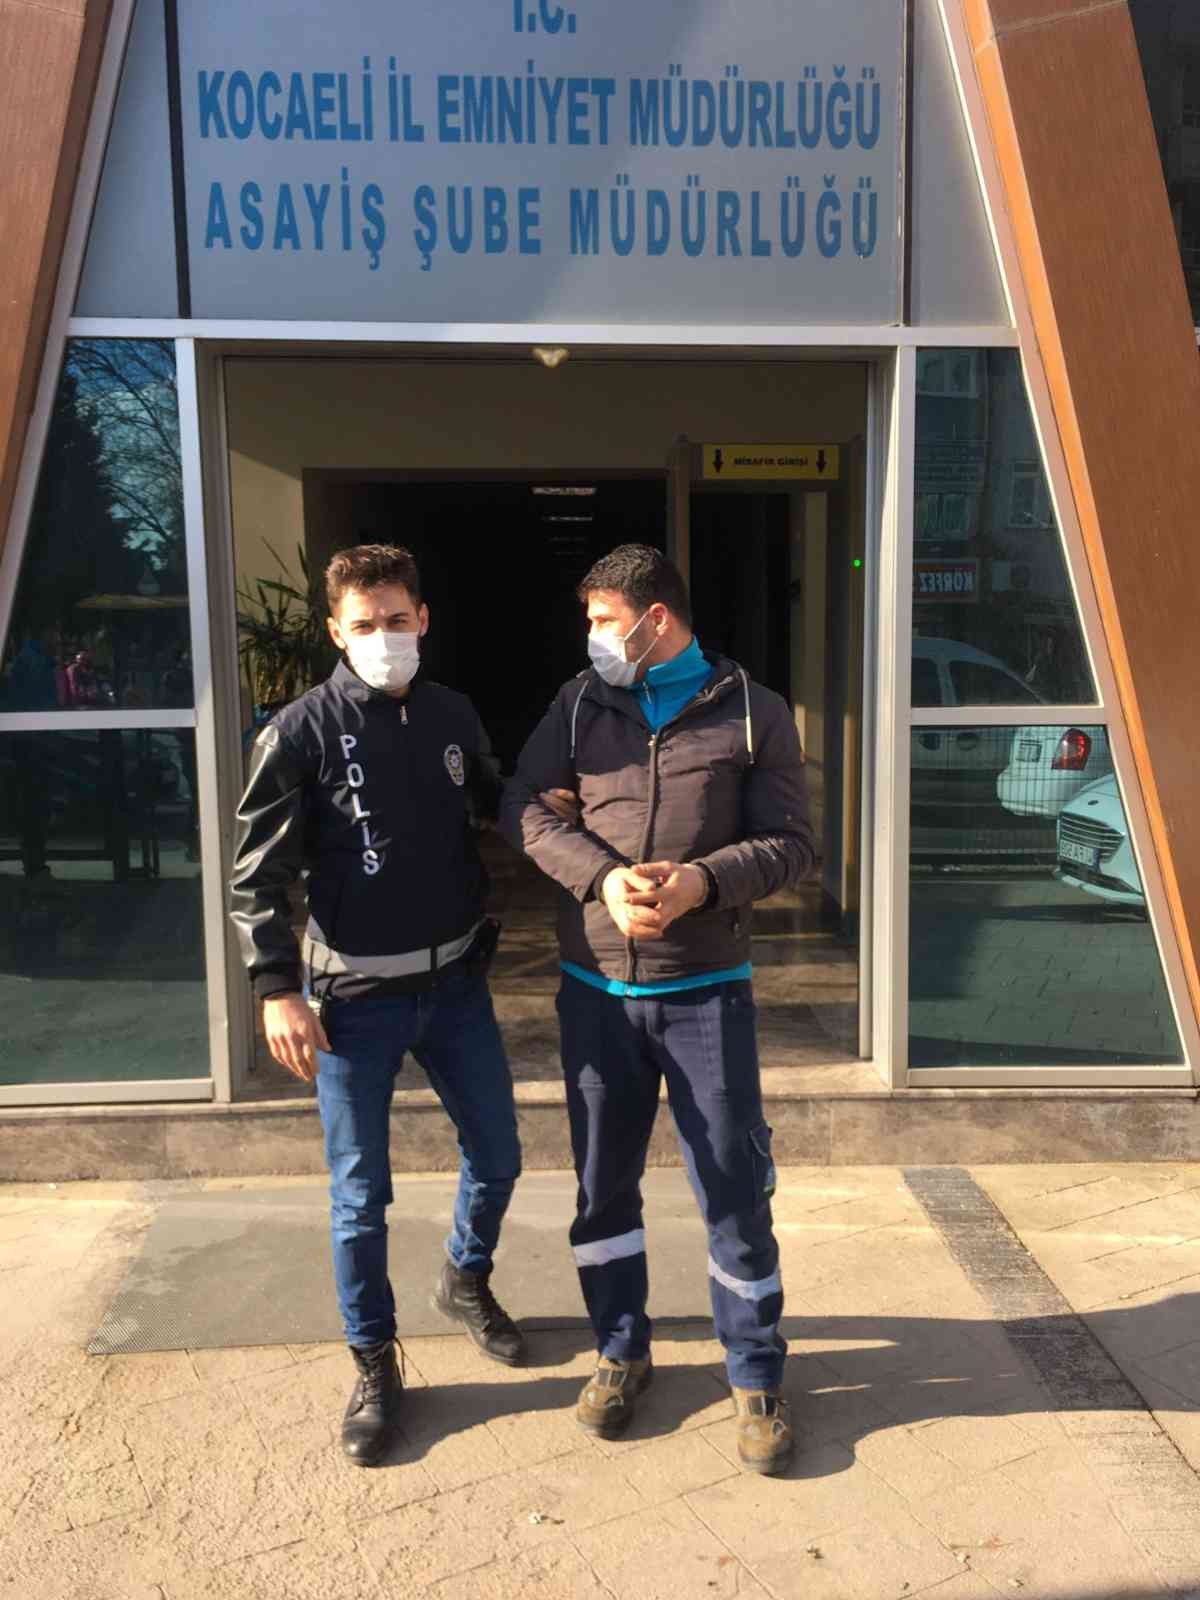 Kamu kurumlarından eşya çalan hırsız yakalandı #kocaeli